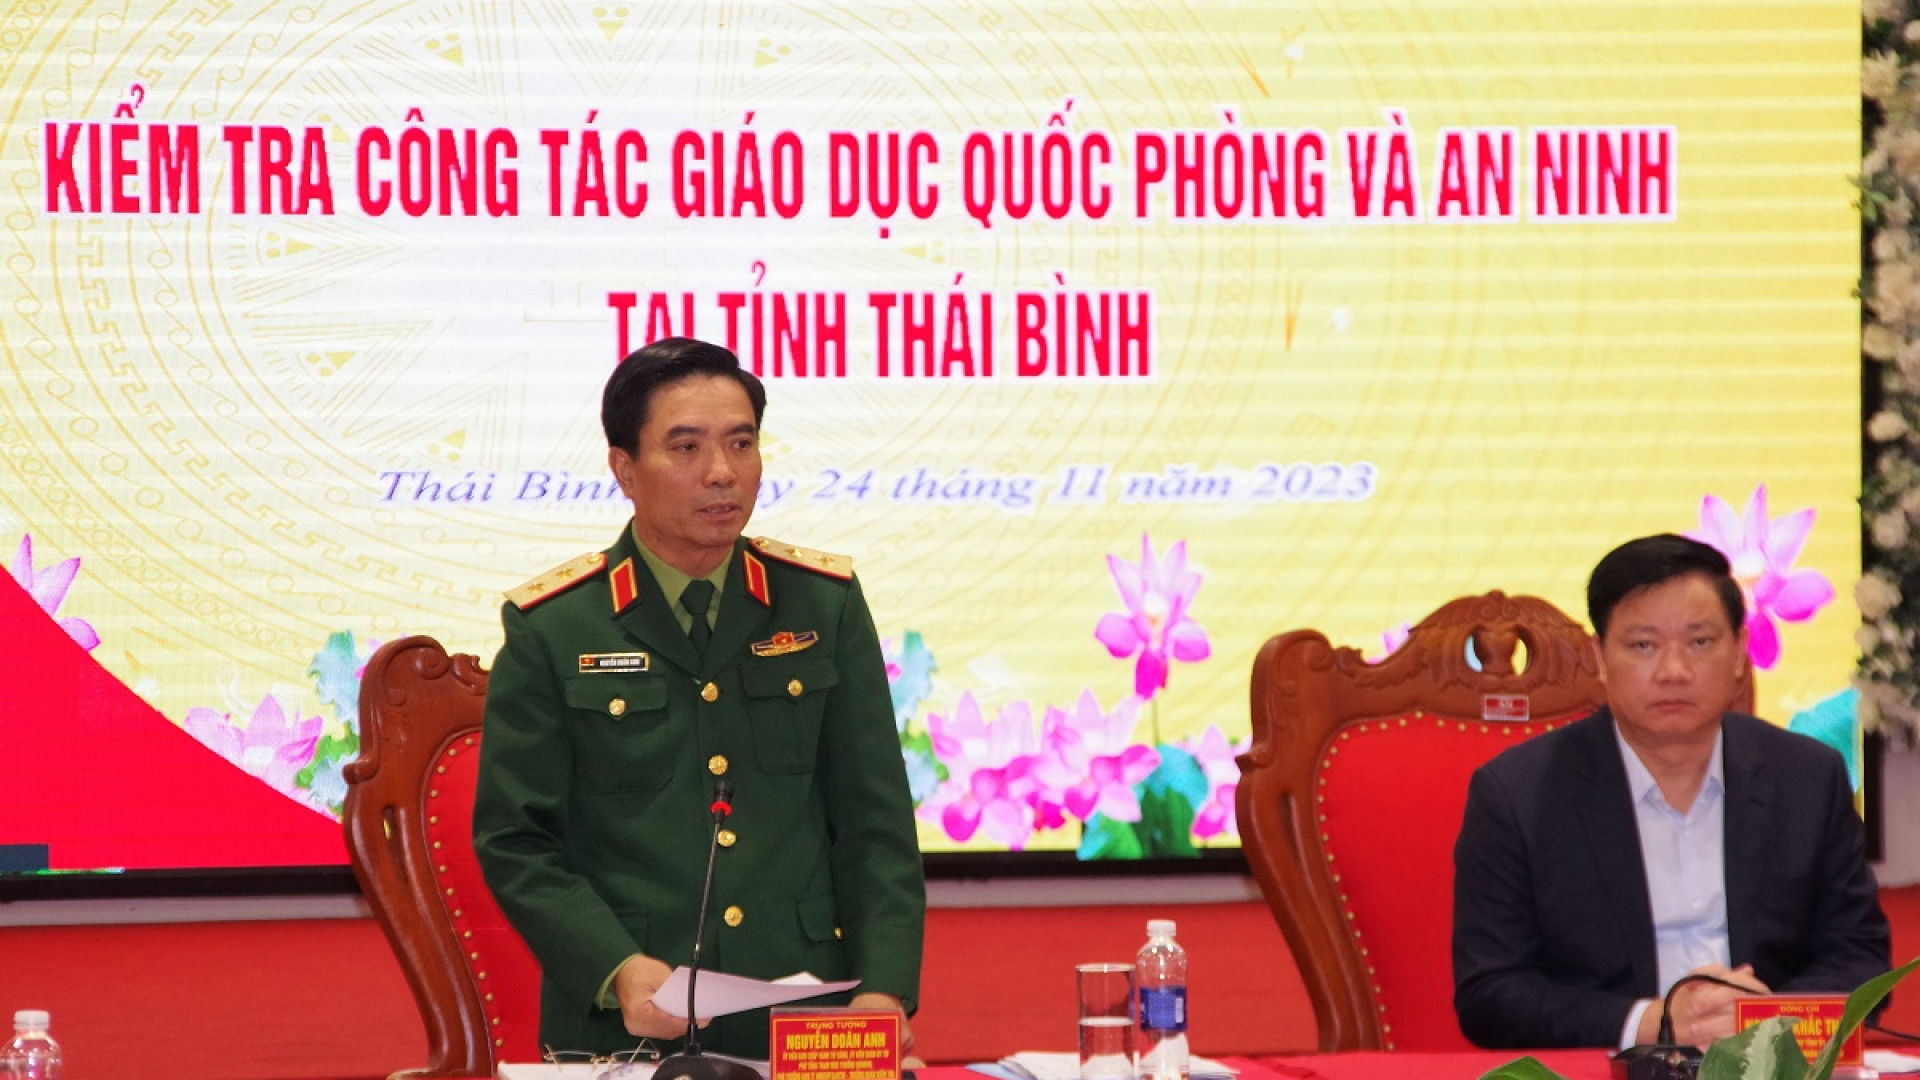 Hội đồng Giáo dục quốc phòng, an ninh Trung ương kiểm tra tại tỉnh Thái Bình